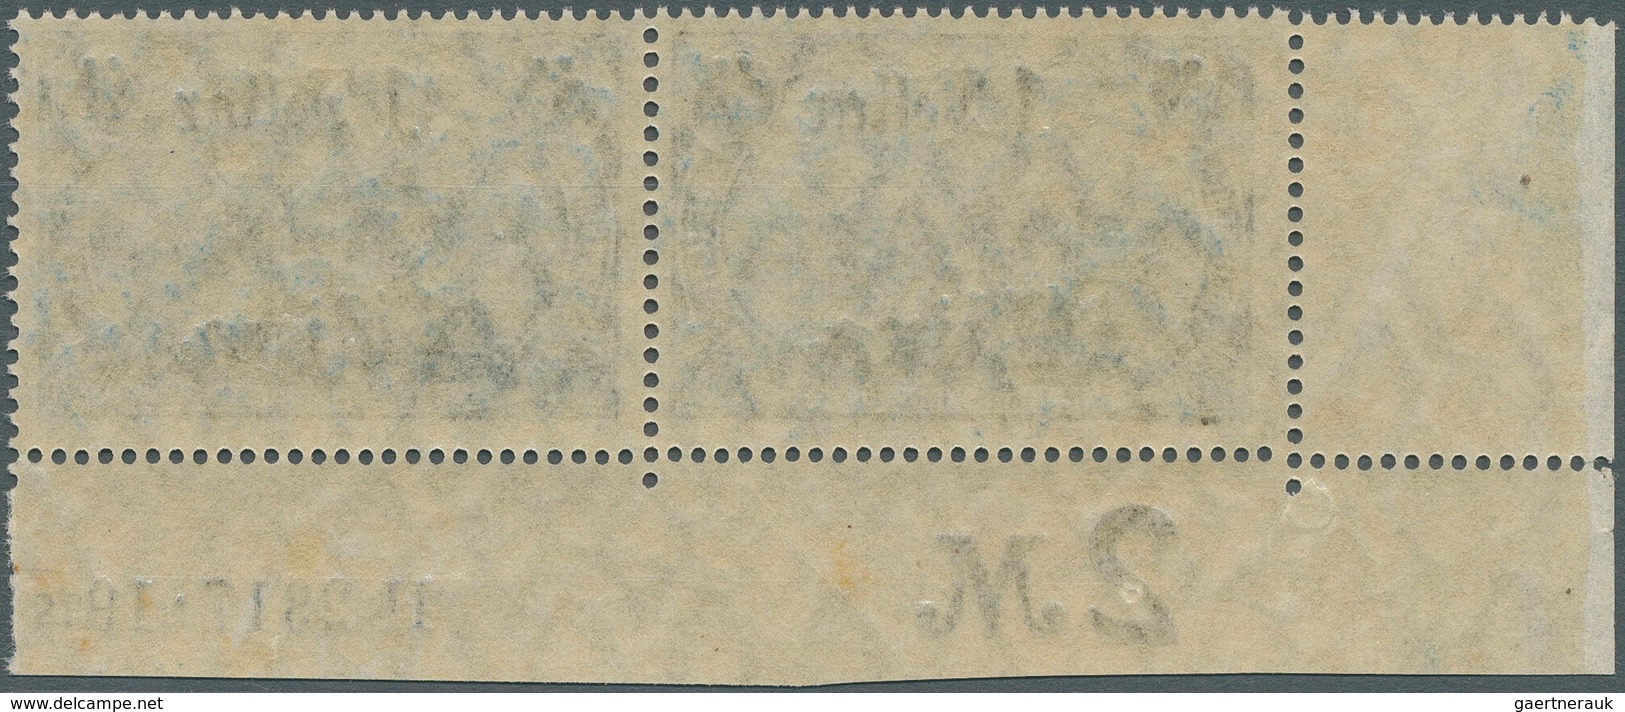 Deutsche Post In China: 1919, Freimarken 1 Dollar Auf 2 Mark, Kriegsdruck, Zähnung 26:17, Abstand 10 - China (offices)